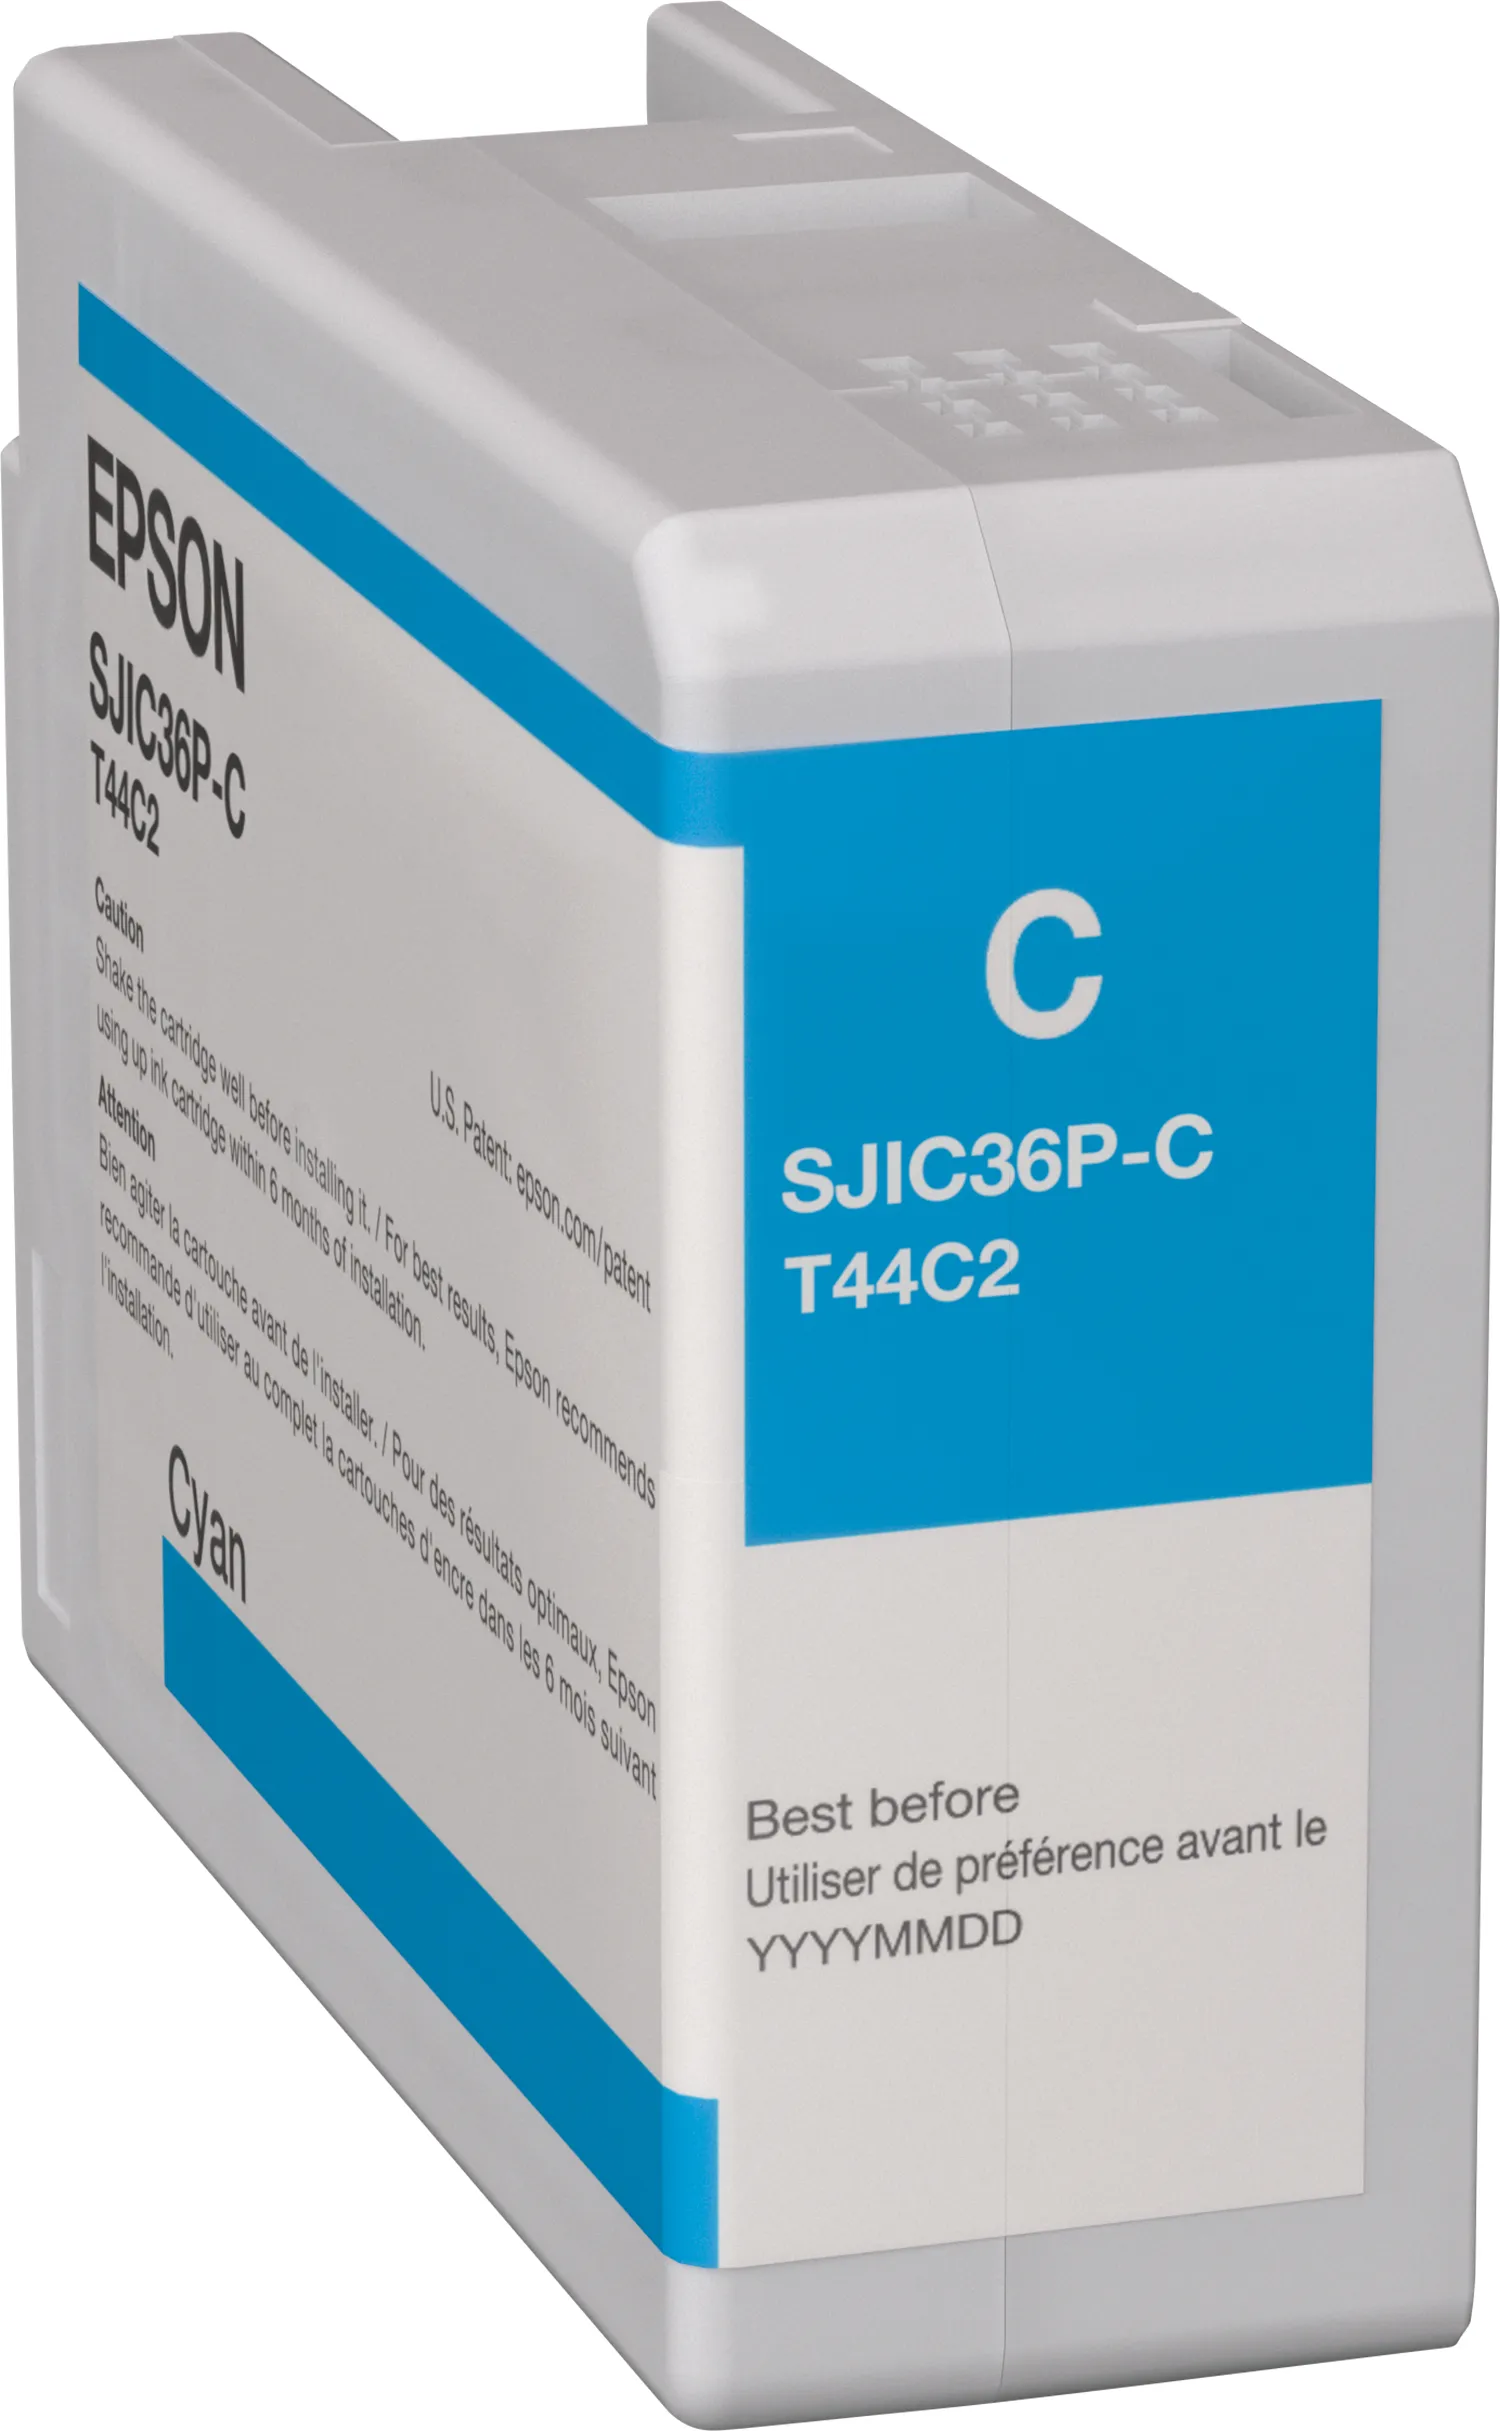 Achat Epson SJIC36P(C): Ink cartridge for ColorWorks C6500/C6000 au meilleur prix